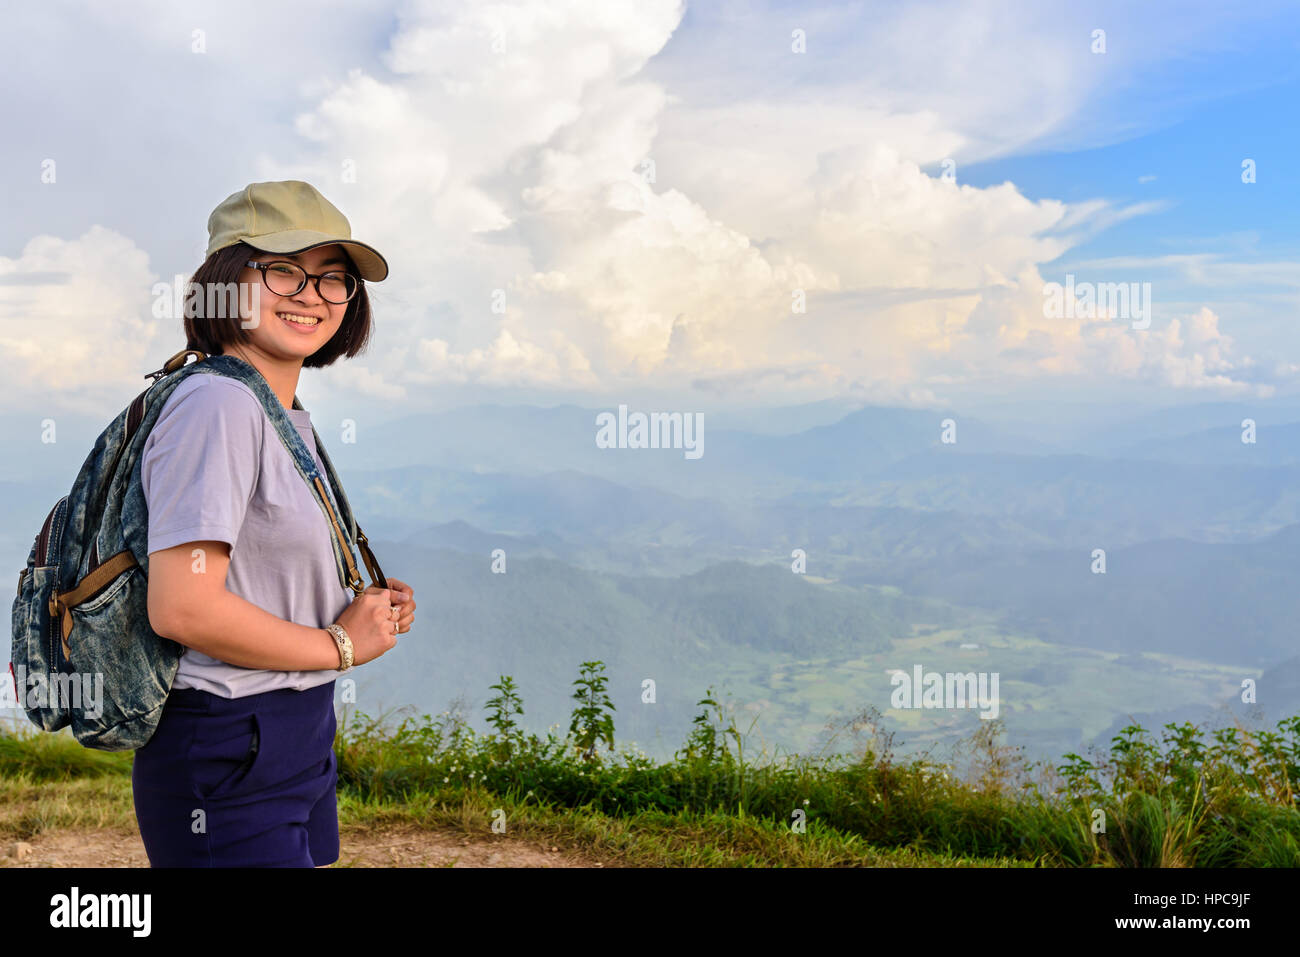 Los adolescentes chica excursionista una gorra y gafas de desgaste con mochila está de pie y sonriendo felizmente de alta montaña en el punto panorámico de Phu Chi Fa Forest Park Foto de stock